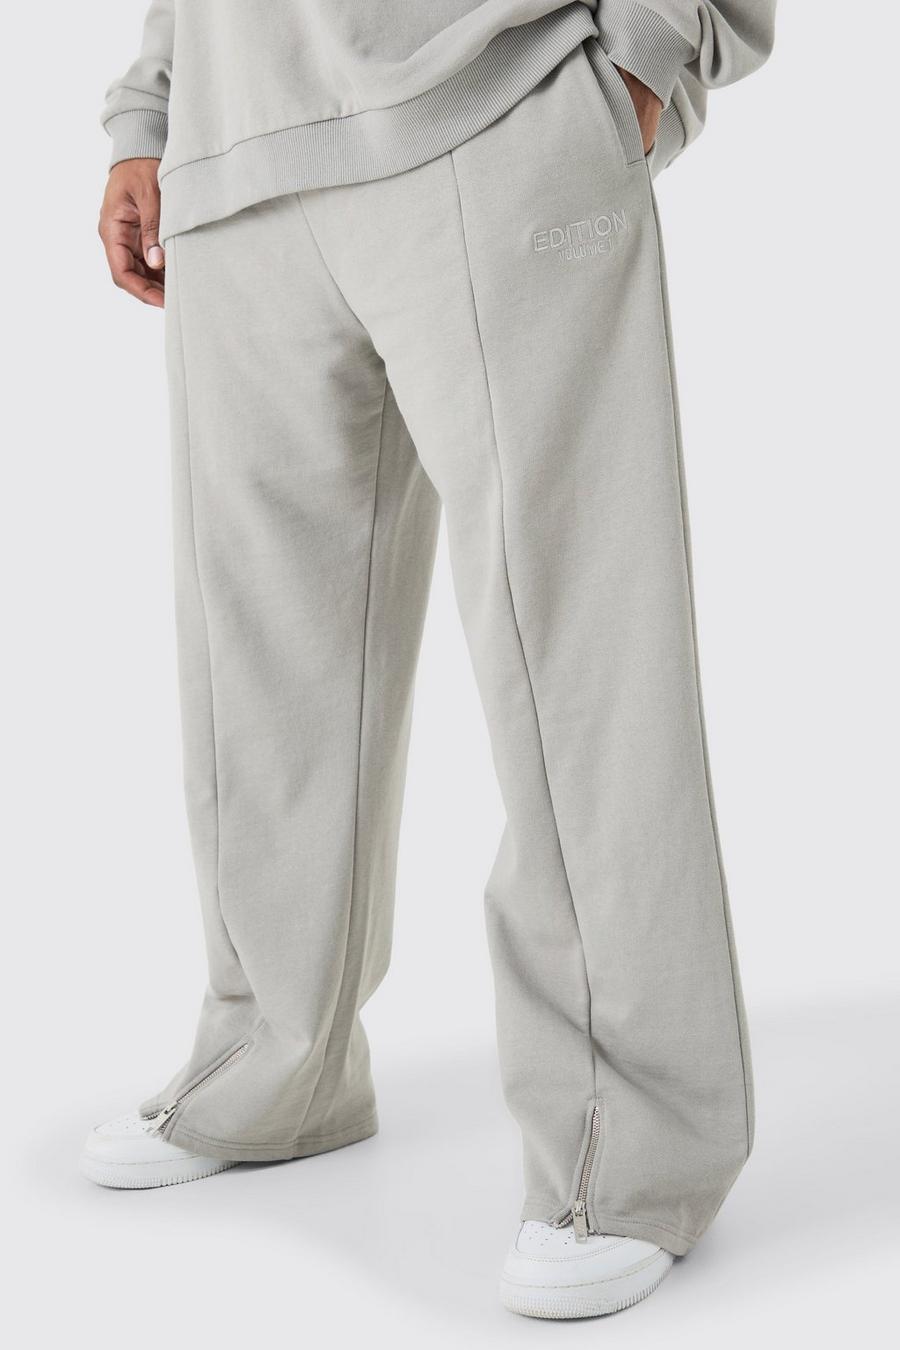 Pantalón deportivo Plus EDITION holgado grueso con abertura en el bajo, Grey image number 1